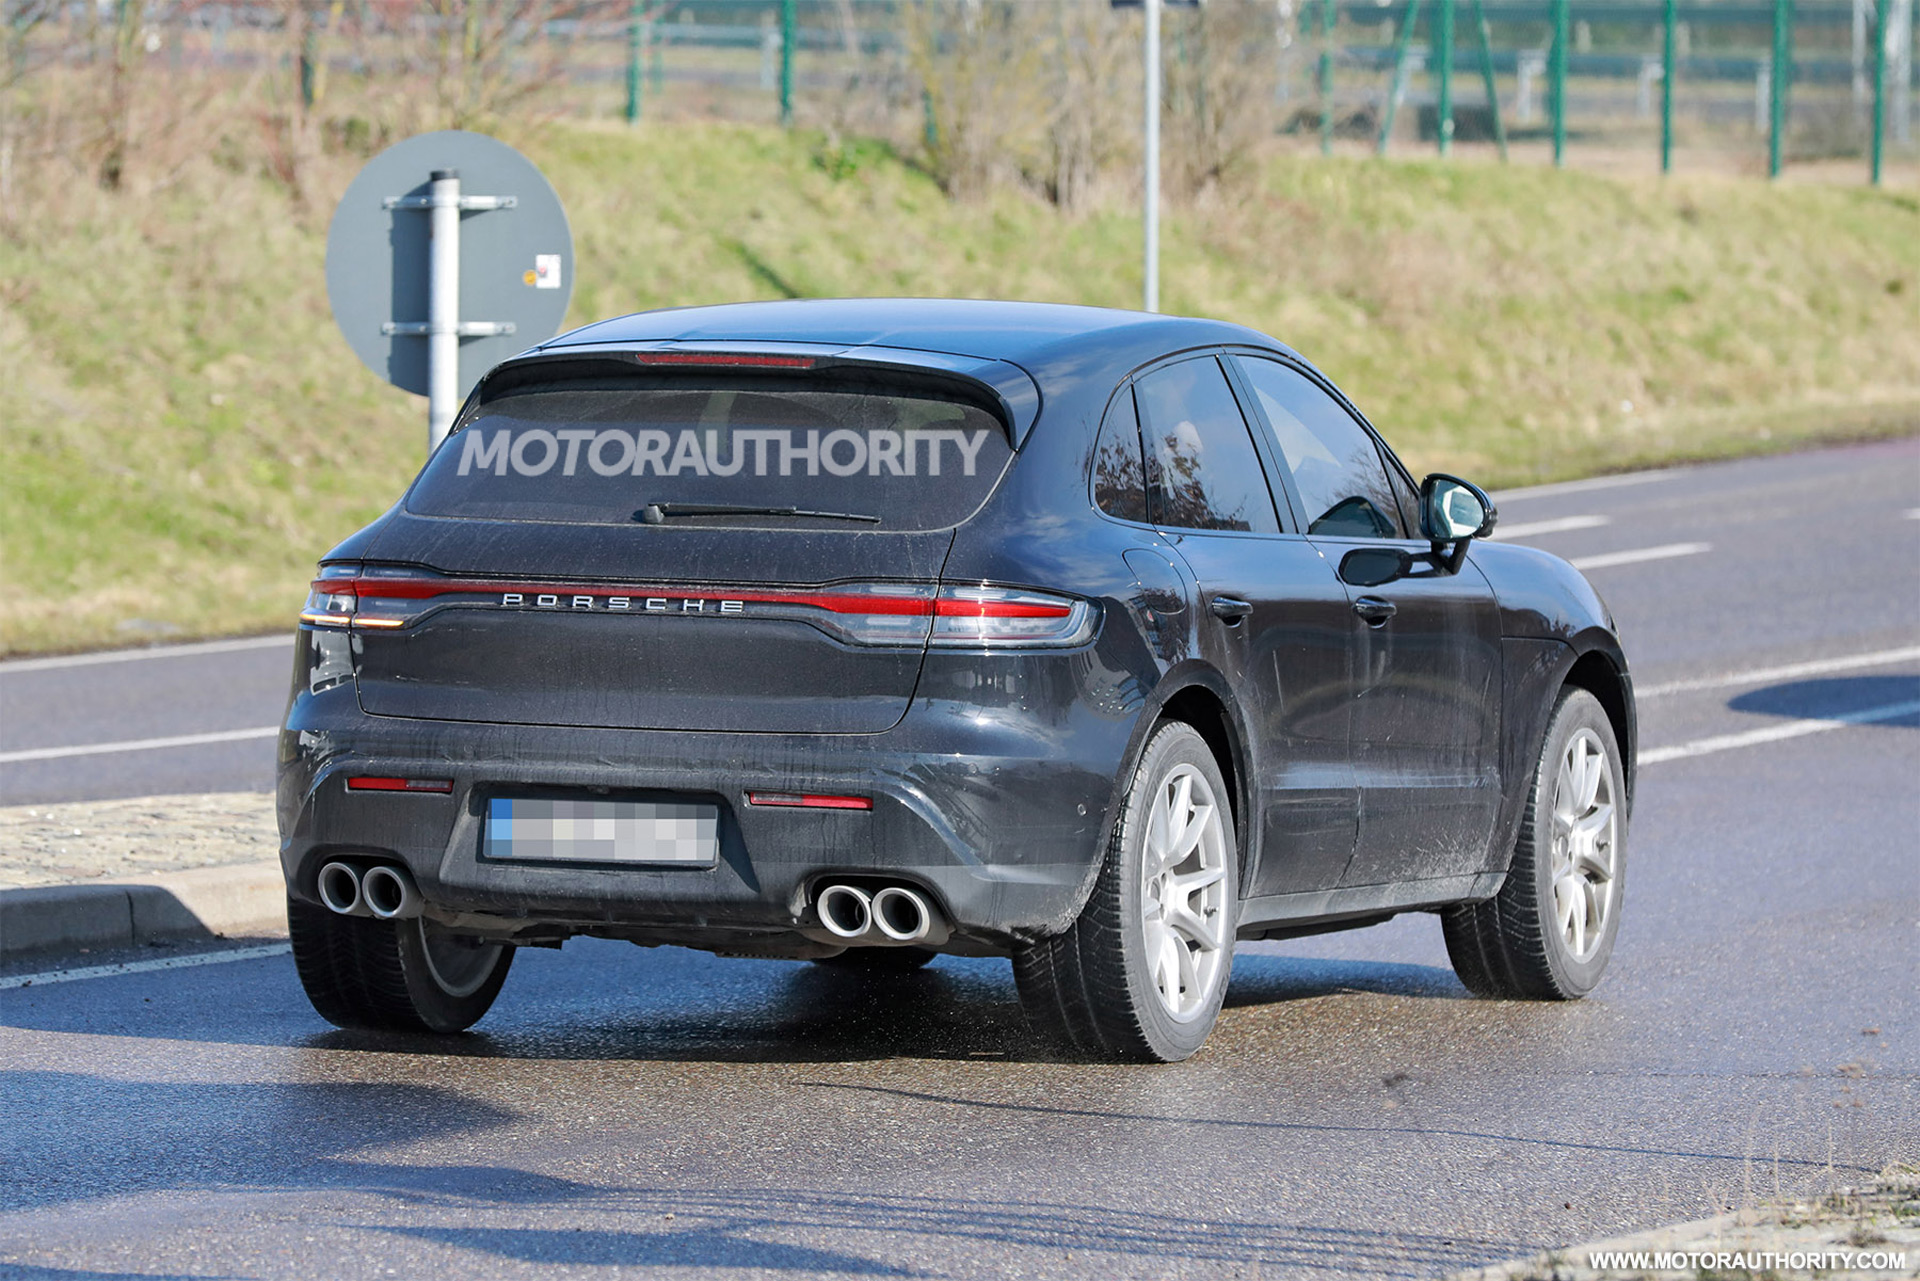 2022 Porsche Macan facelift spy shots - Photo credit: S. Baldauf/SB-Medien